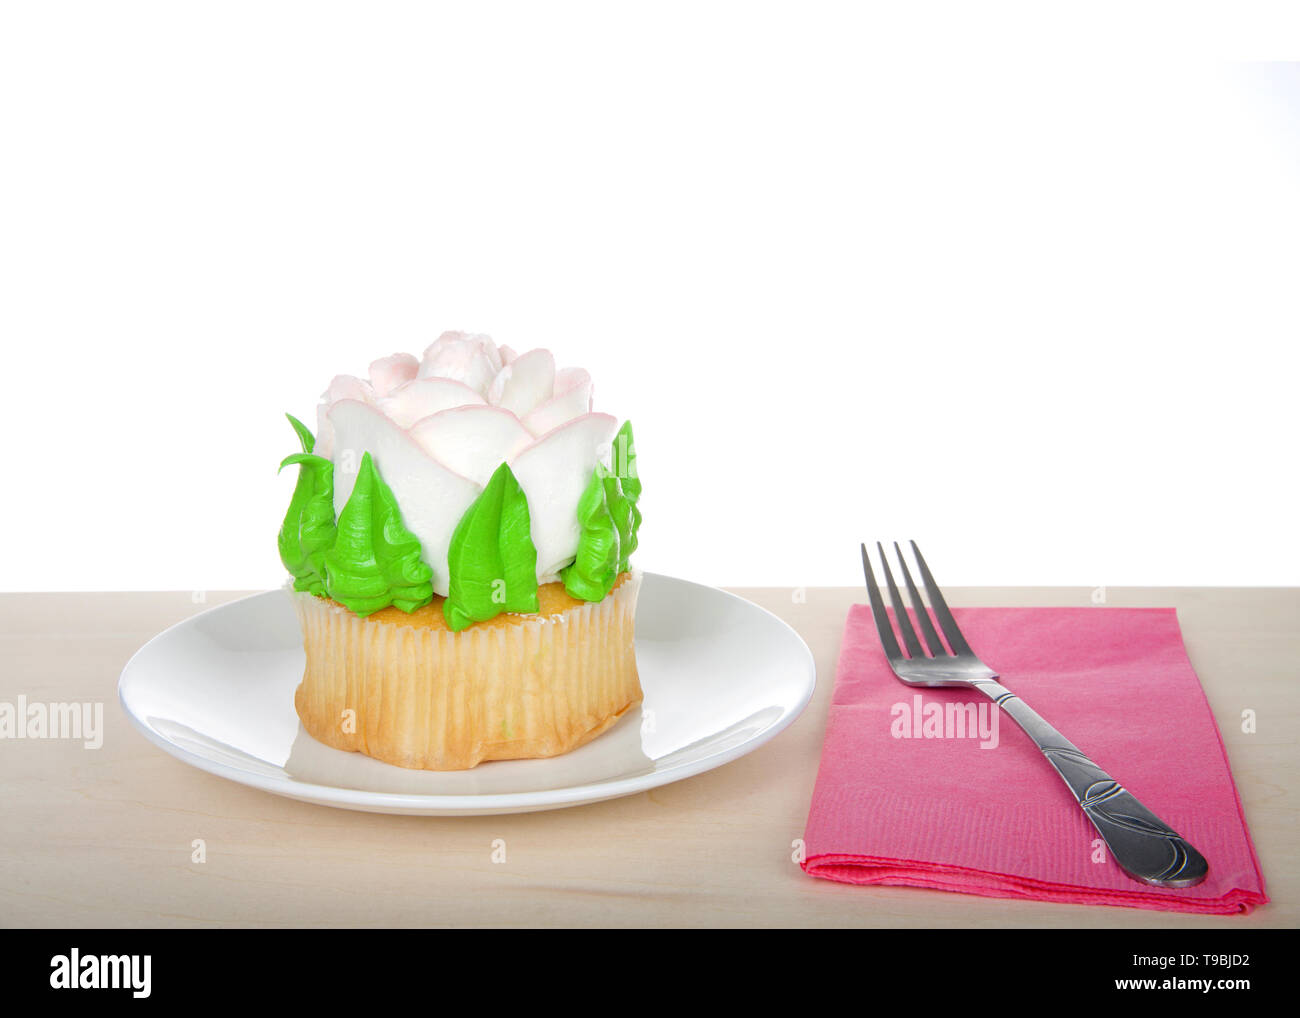 Grande tasse gâteau avec glaçage rose géant assis sur plaque blanche sur table en bois, serviette rose avec une fourchette. Design simple avec copie espace pour la Fête des Mères, V Banque D'Images